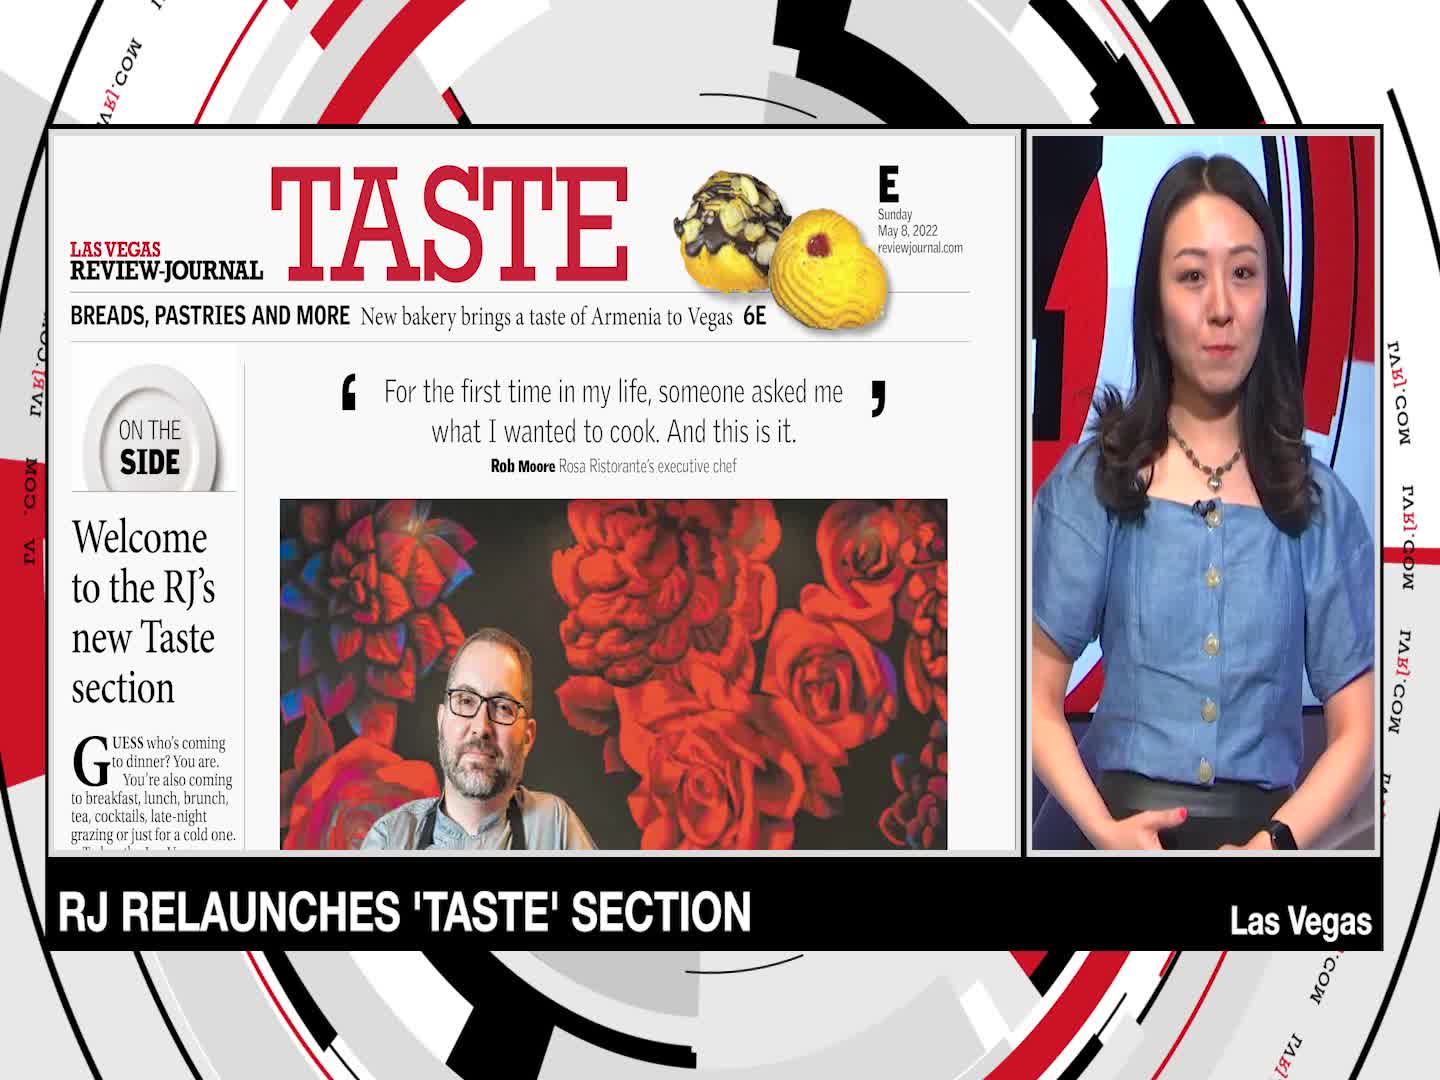 RJ Relaunches 'Taste' Section